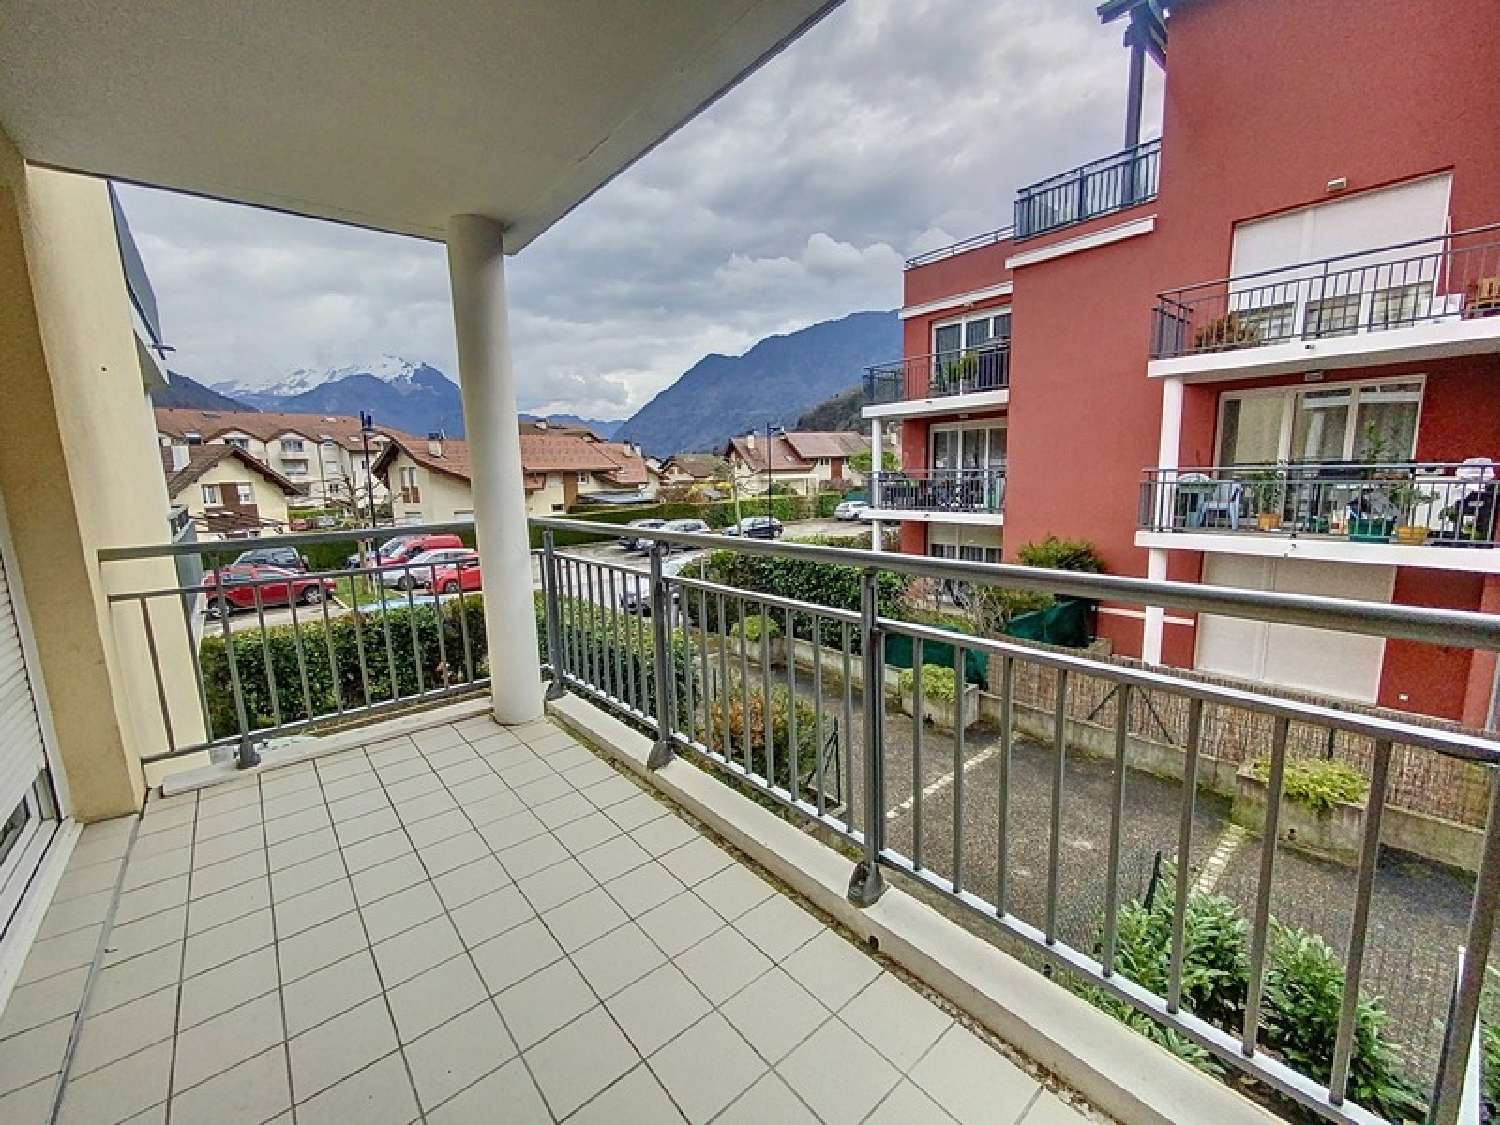 Faverges Haute-Savoie Wohnung/ Apartment Bild 6846373